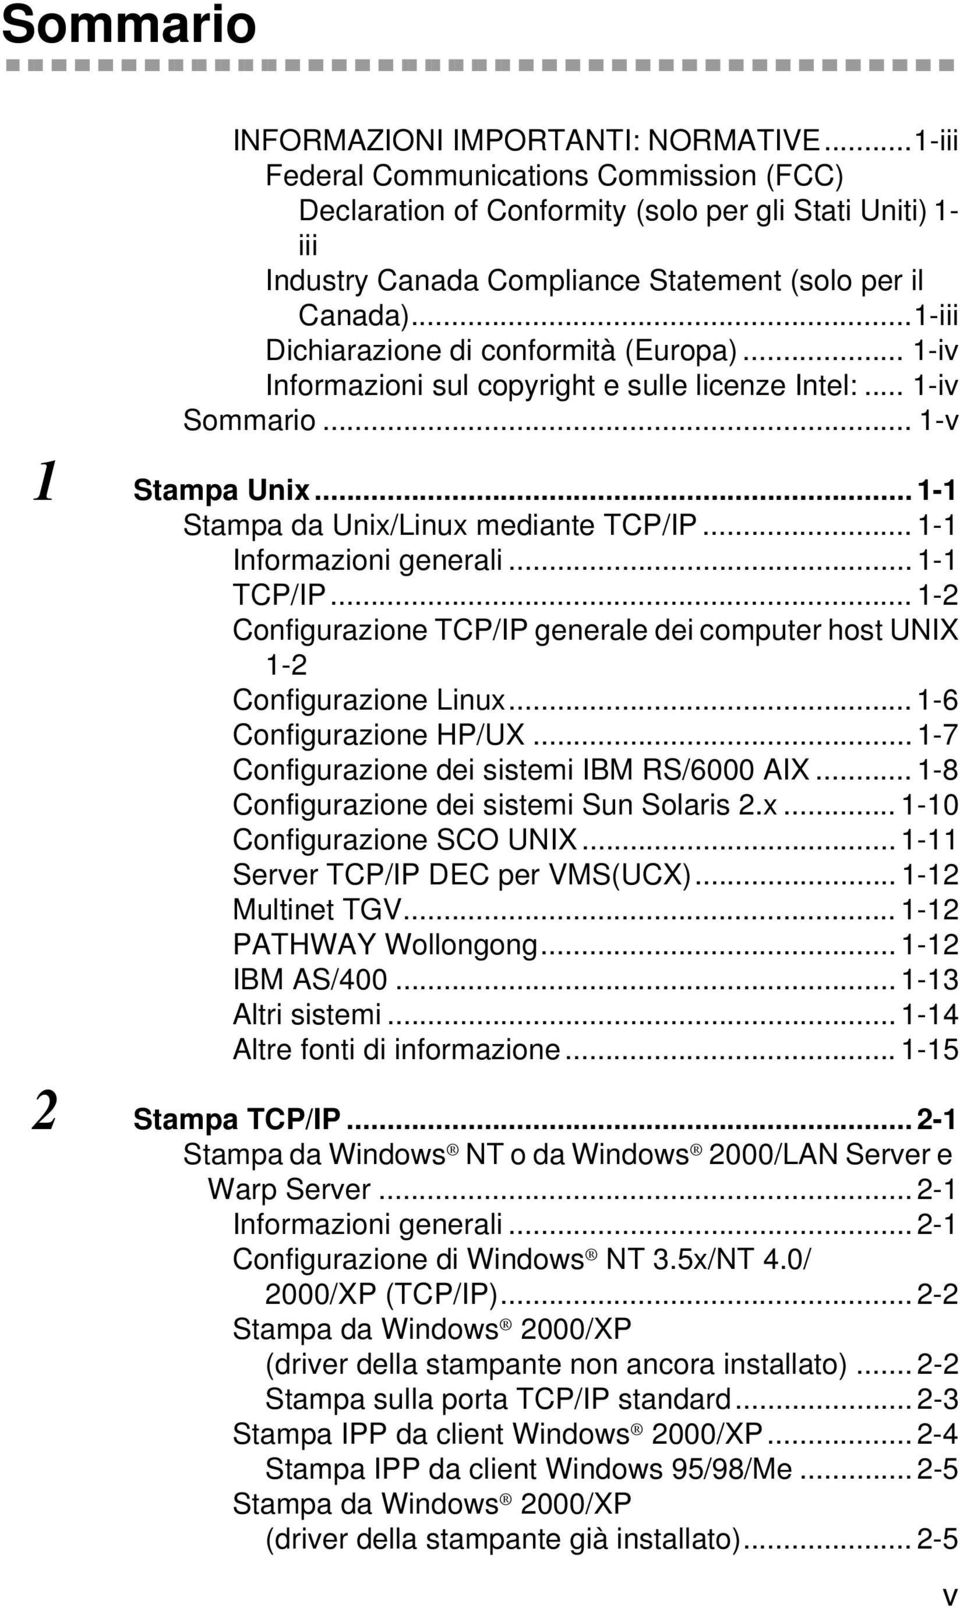 ..1-iii Dichiarazione di conformità (Europa)... 1-iv Informazioni sul copyright e sulle licenze Intel:... 1-iv Sommario... 1-v 1 Stampa Unix... 1-1 Stampa da Unix/Linux mediante TCP/IP.